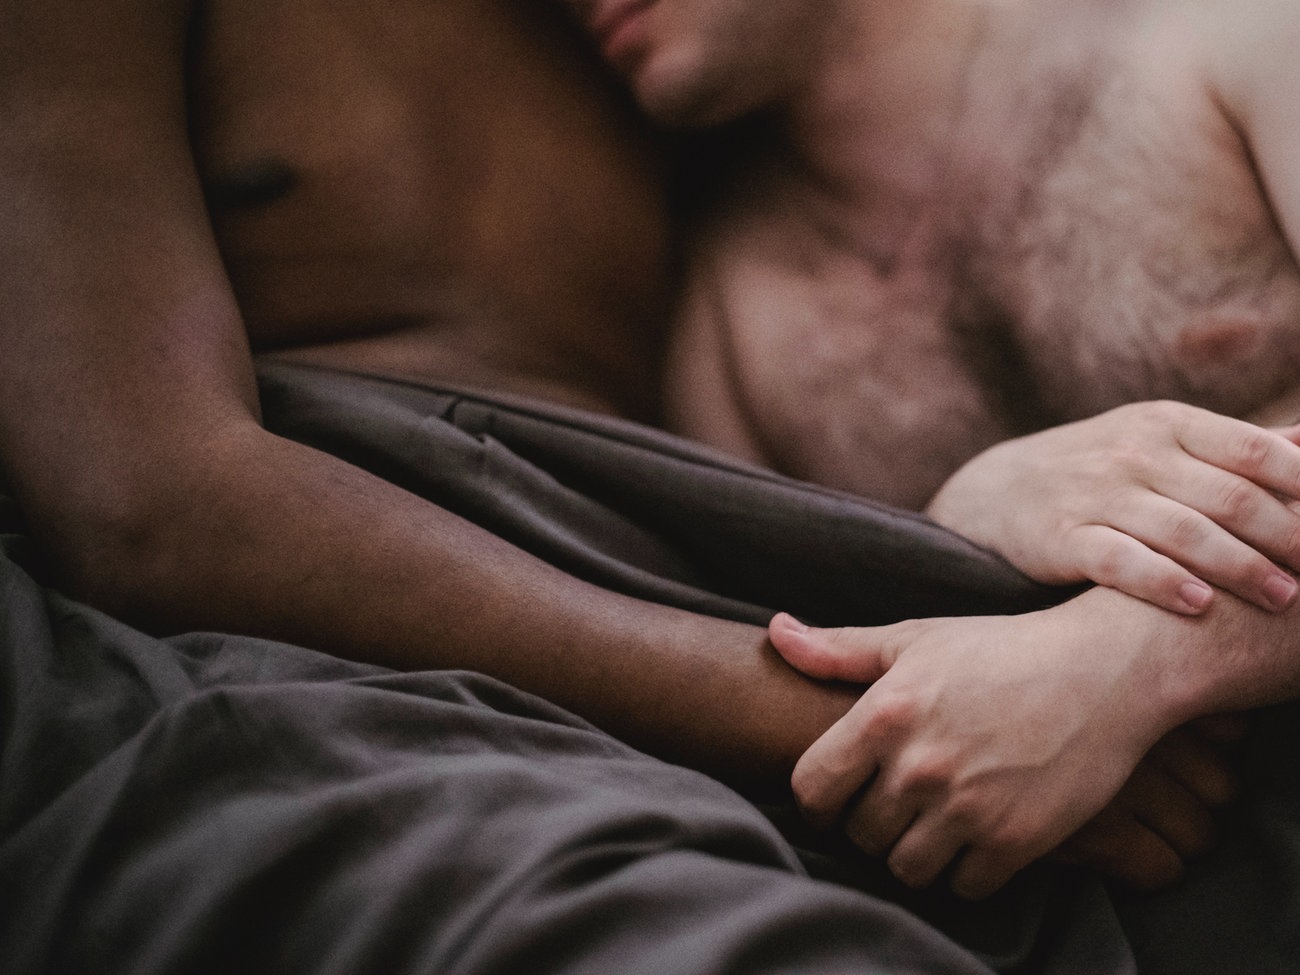 Auf welche Arten kann man am leichtesten sex mit fremden Leuten in der ungebeugt haben?